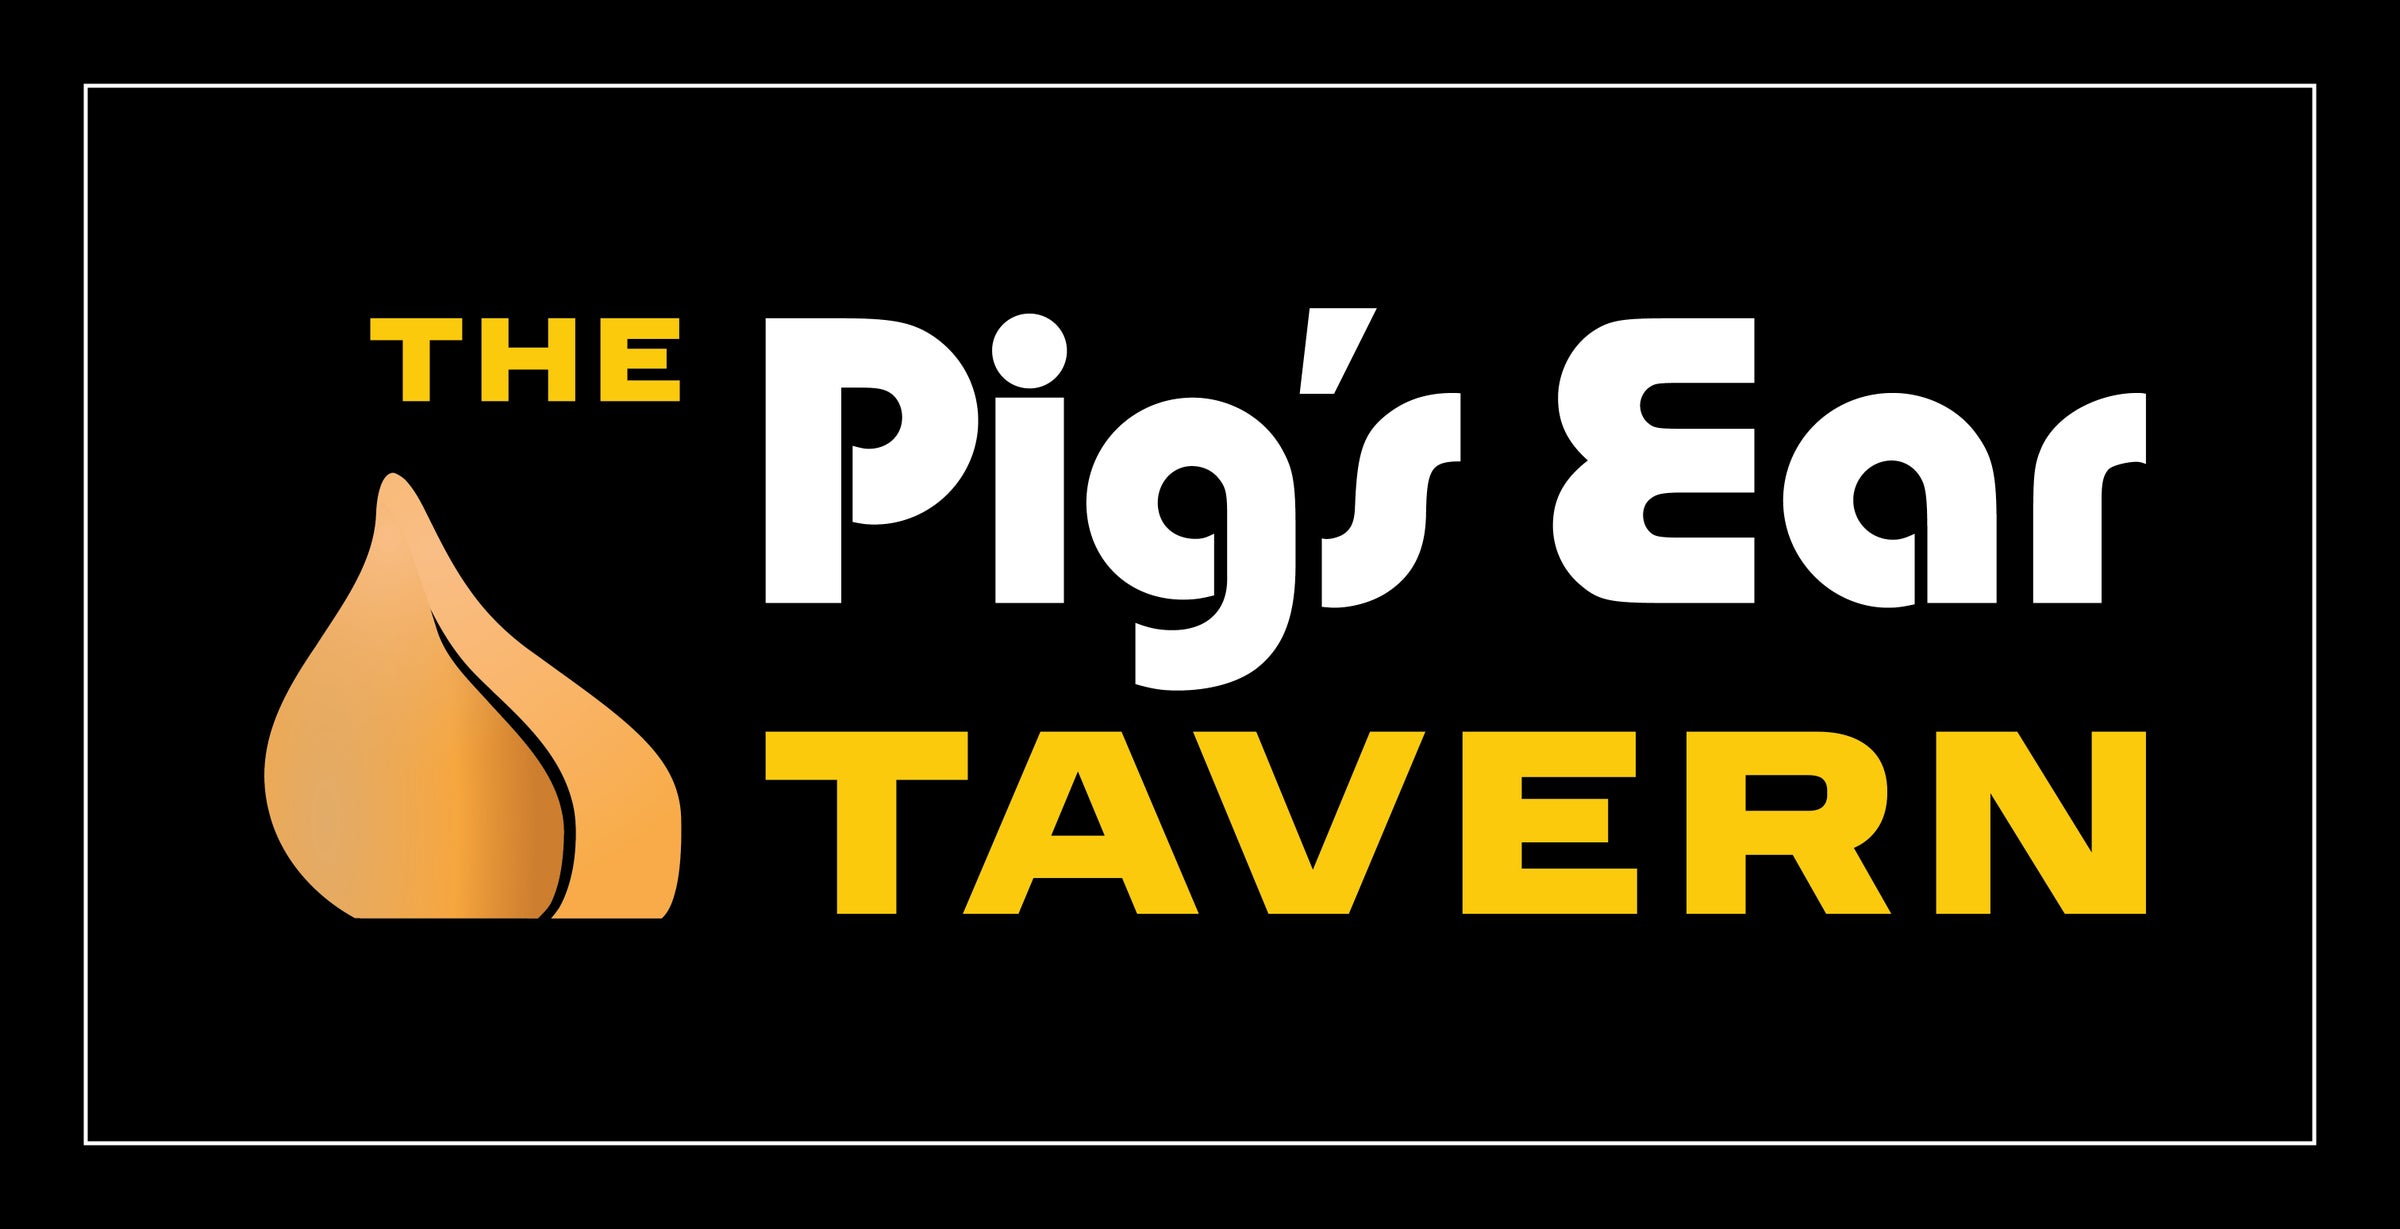 The Pig's Ear Tavern logo